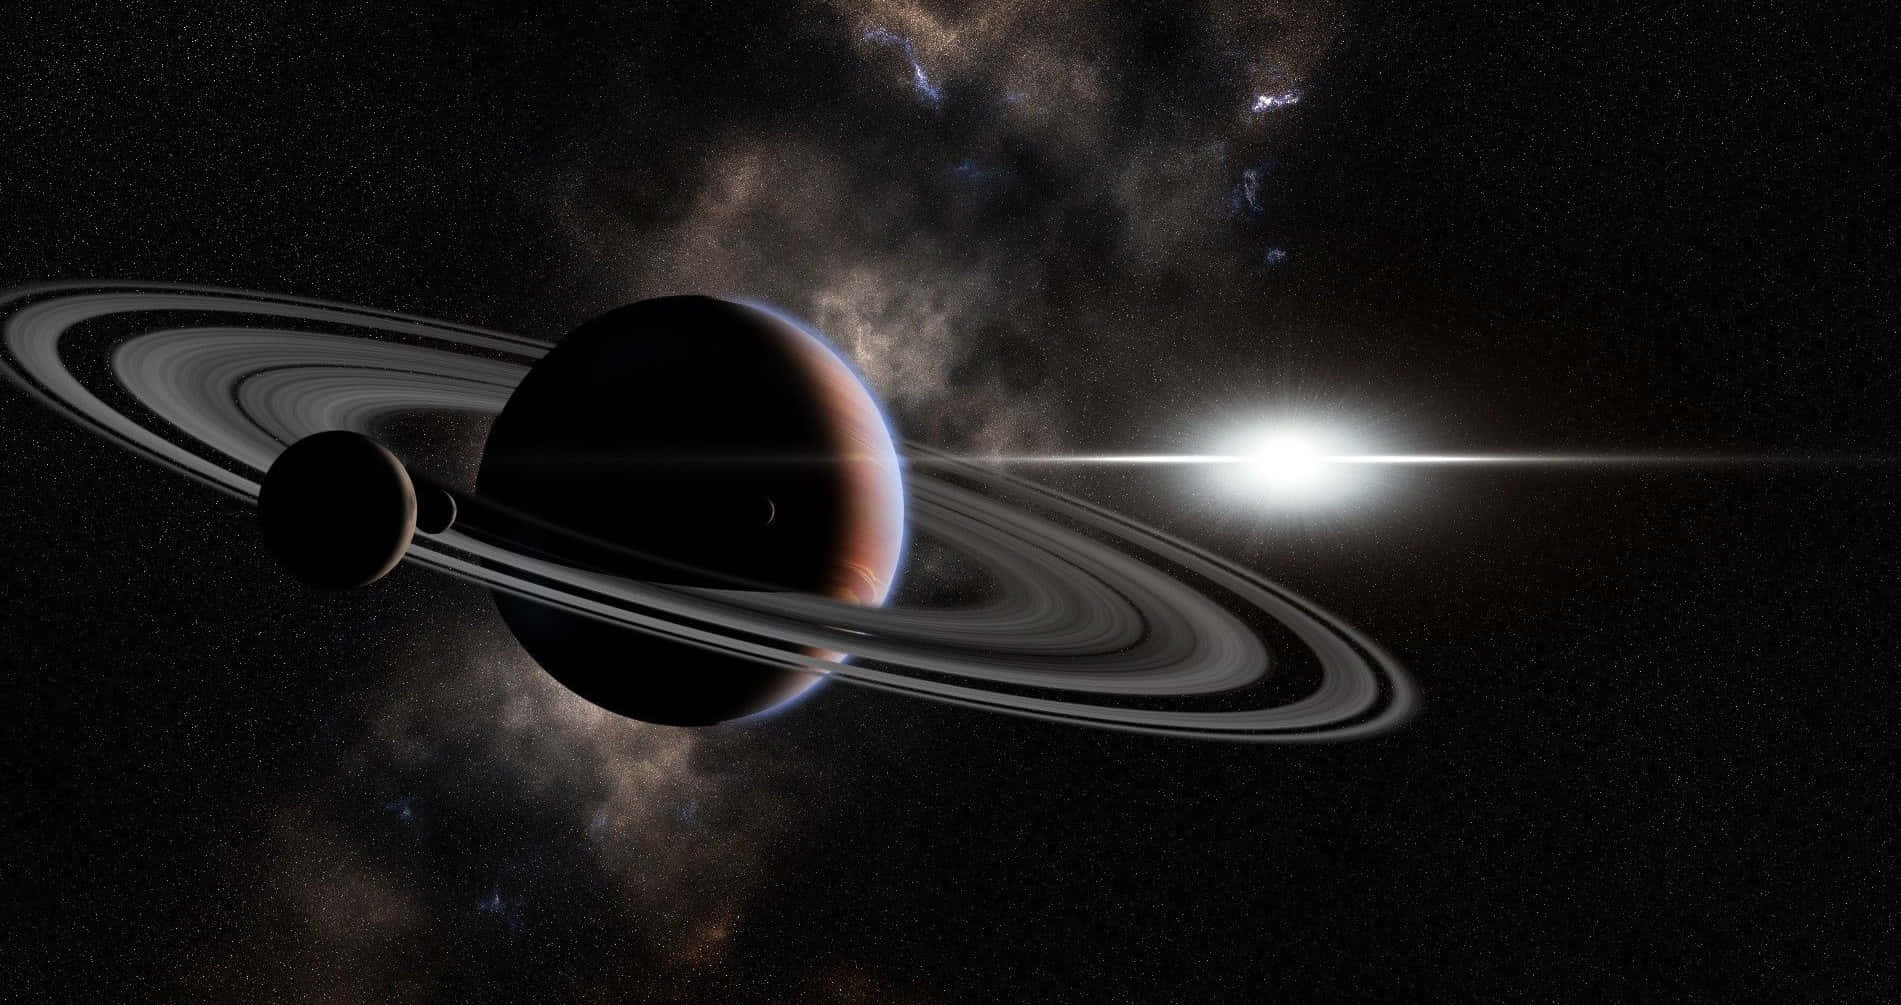 Impresionantevista Del Gigante Gaseoso, Saturno.